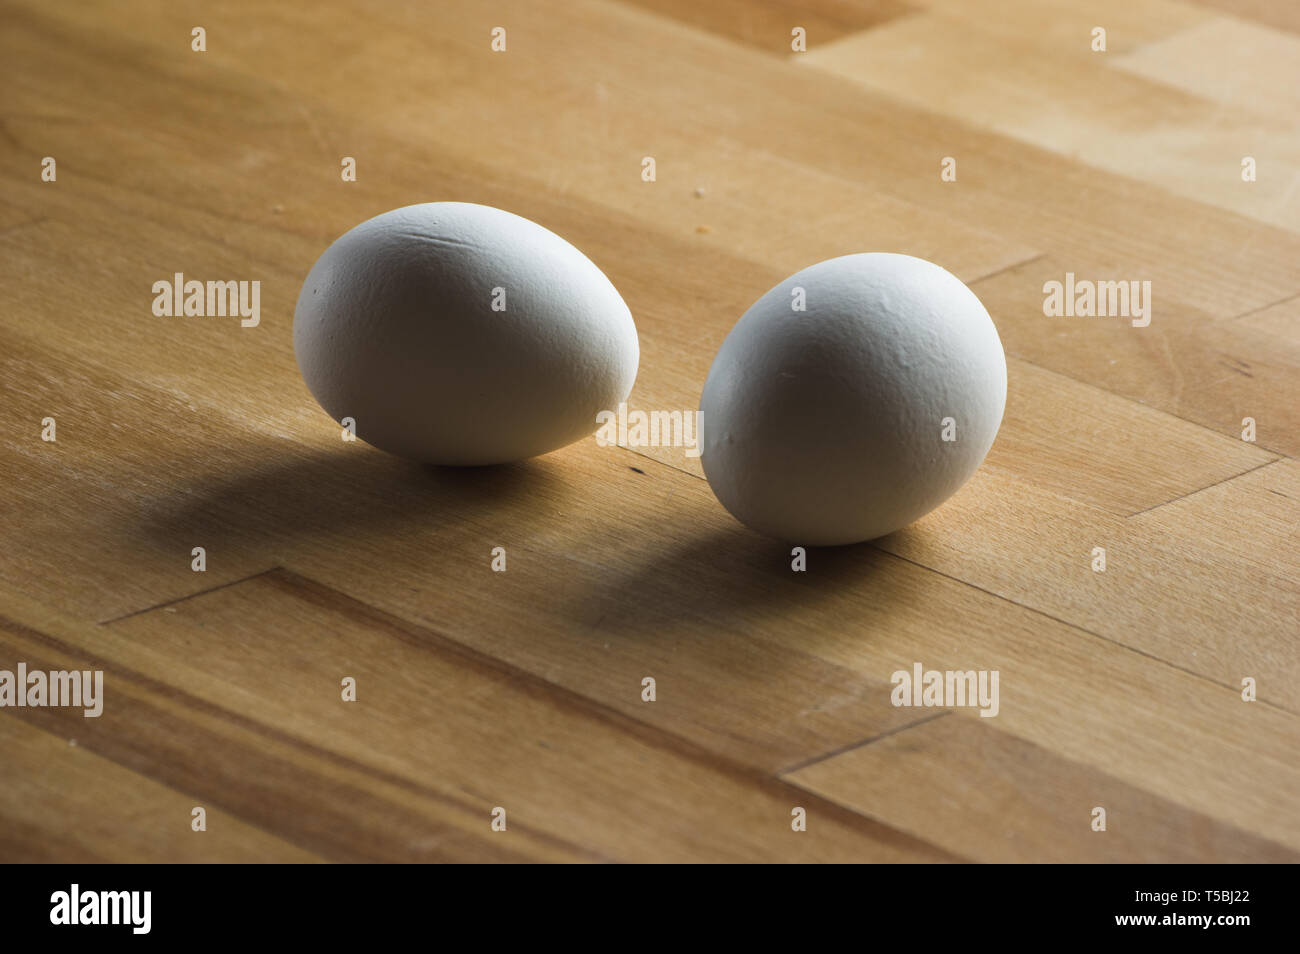 Zwei weiße Eier auf einer hölzernen Küchenarbeitsplatte Stockfoto